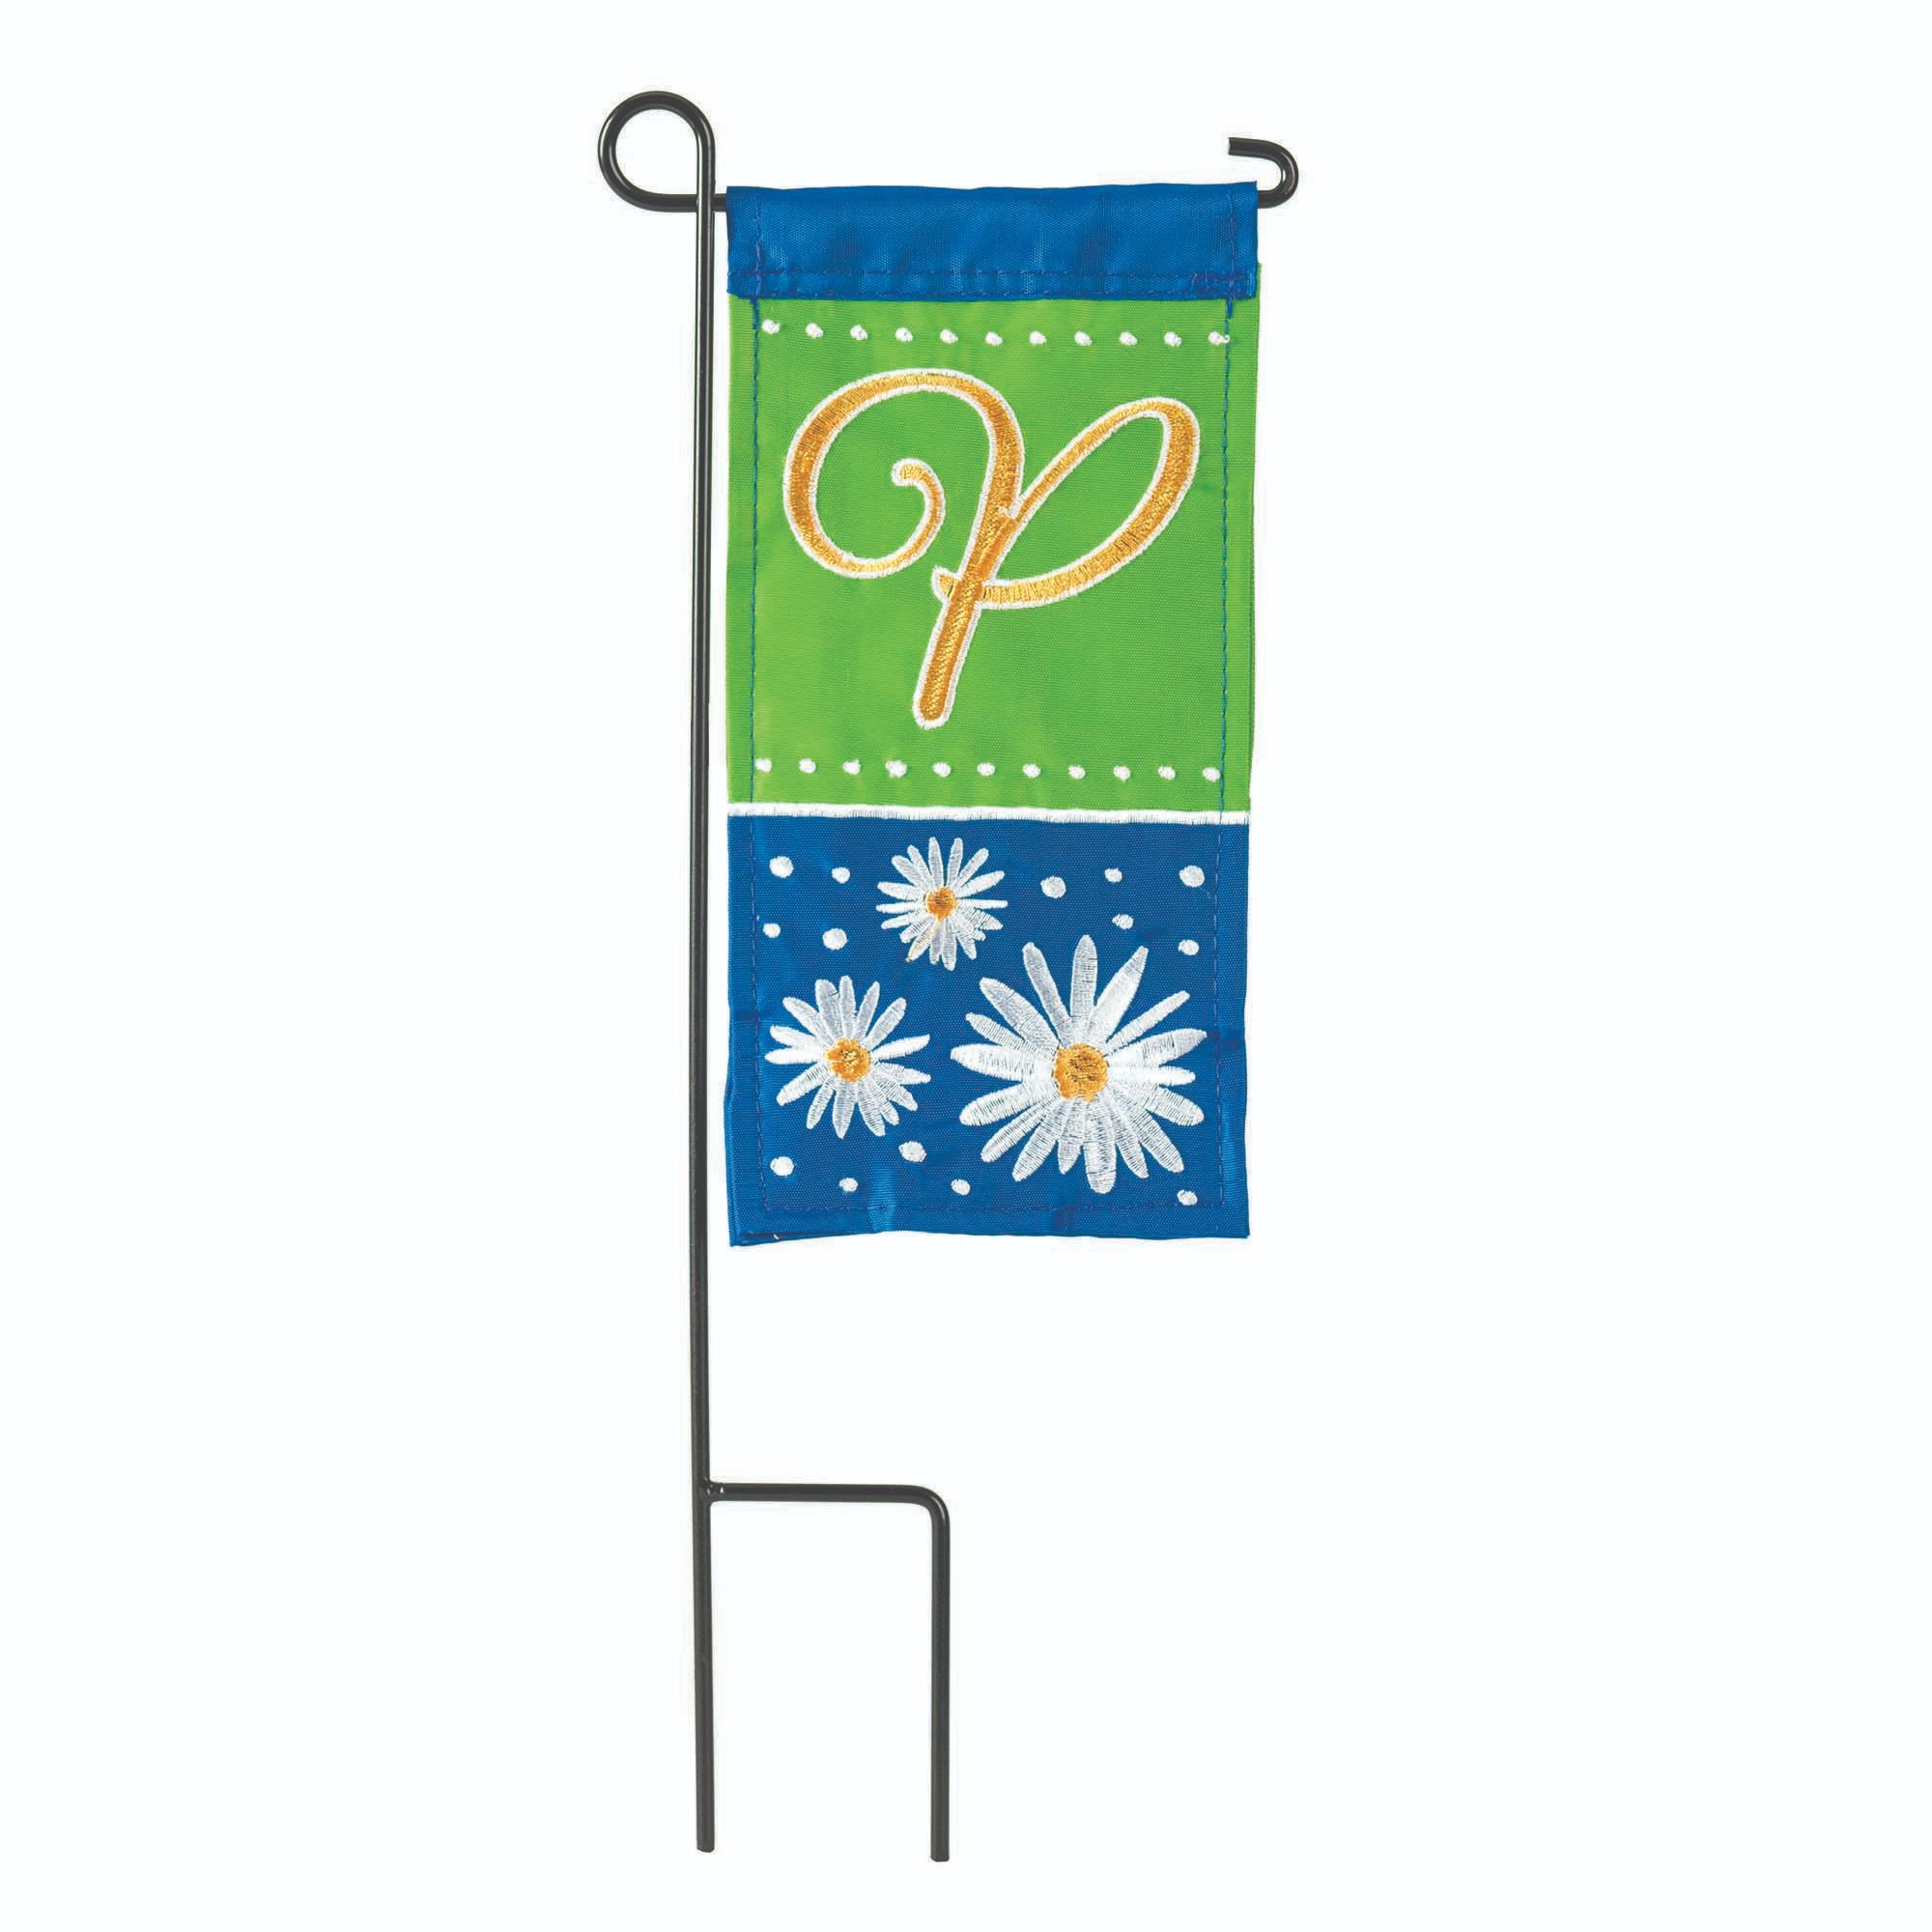 Contemporary Home Living Green and Blue Double Applique Daisy Monogram P Outdoor Garden Flag 8.5" x 4"